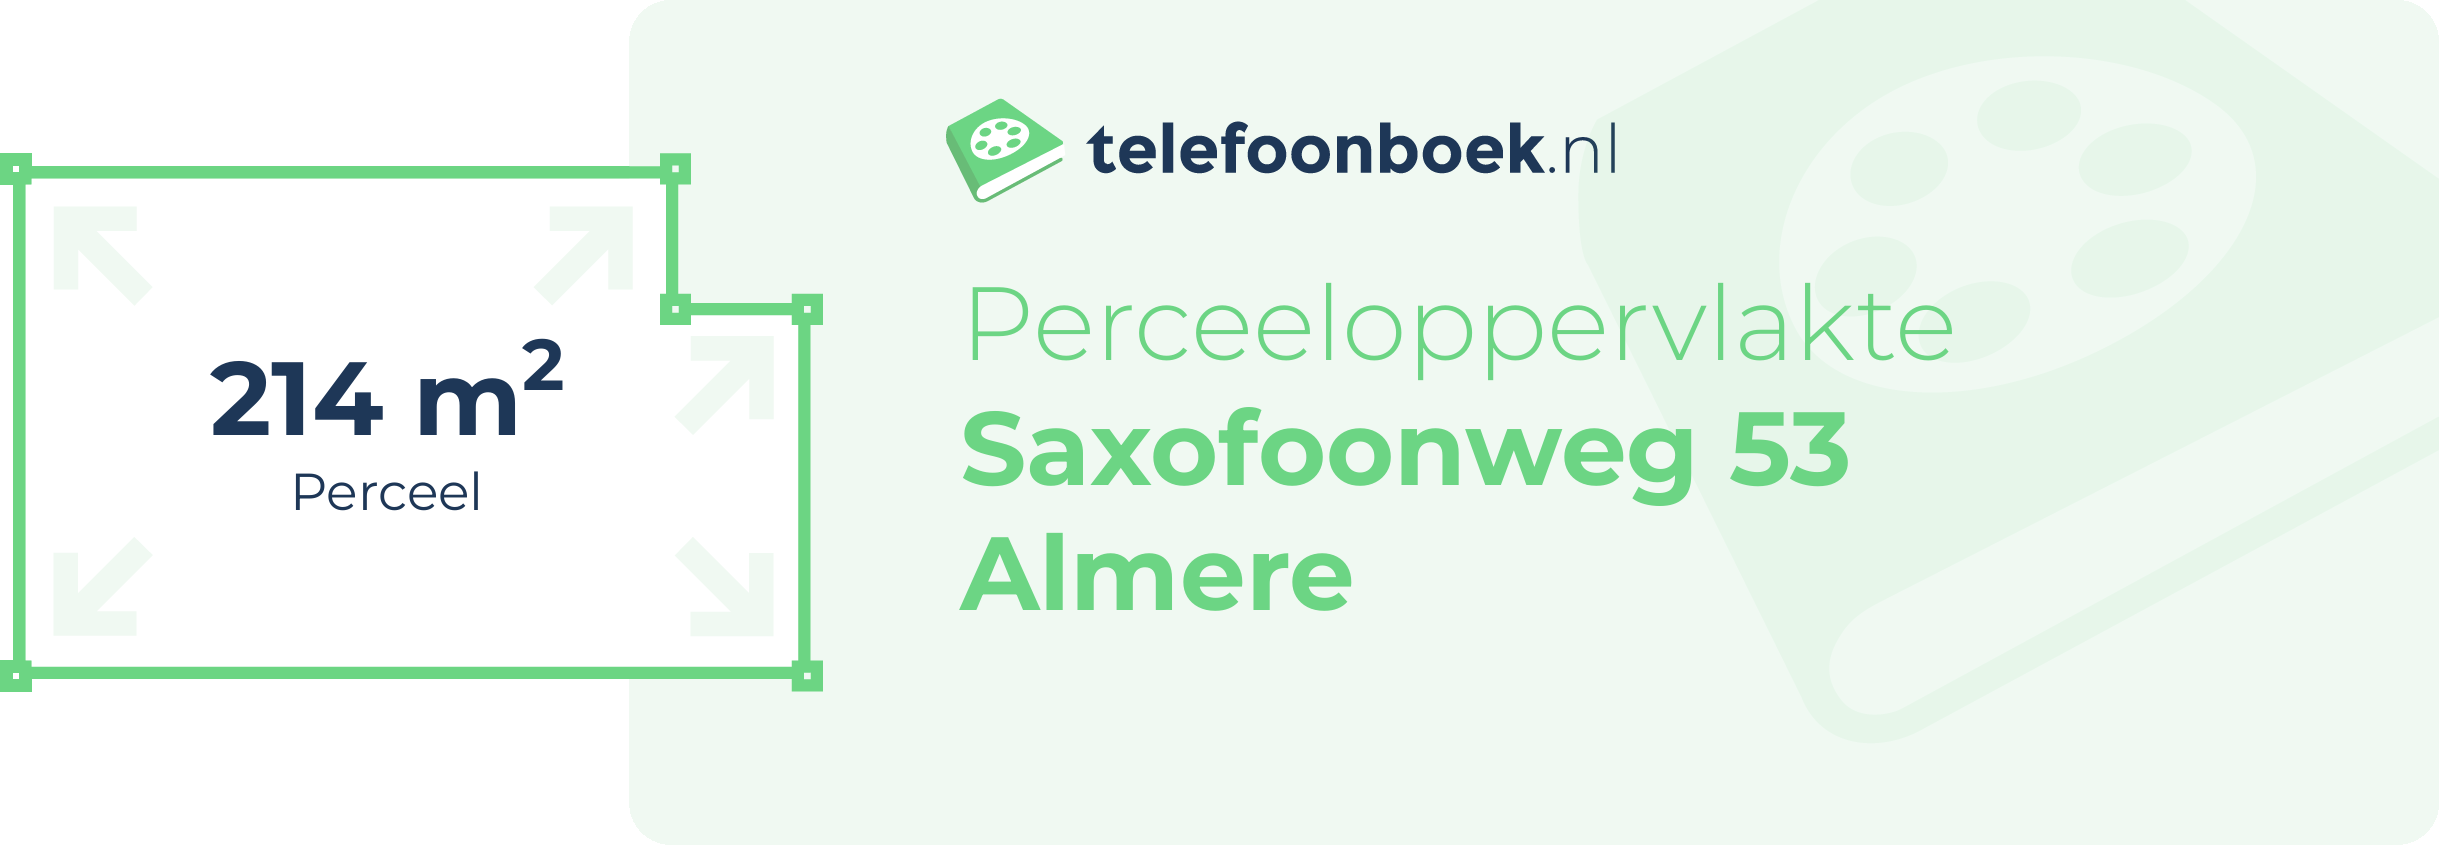 Perceeloppervlakte Saxofoonweg 53 Almere